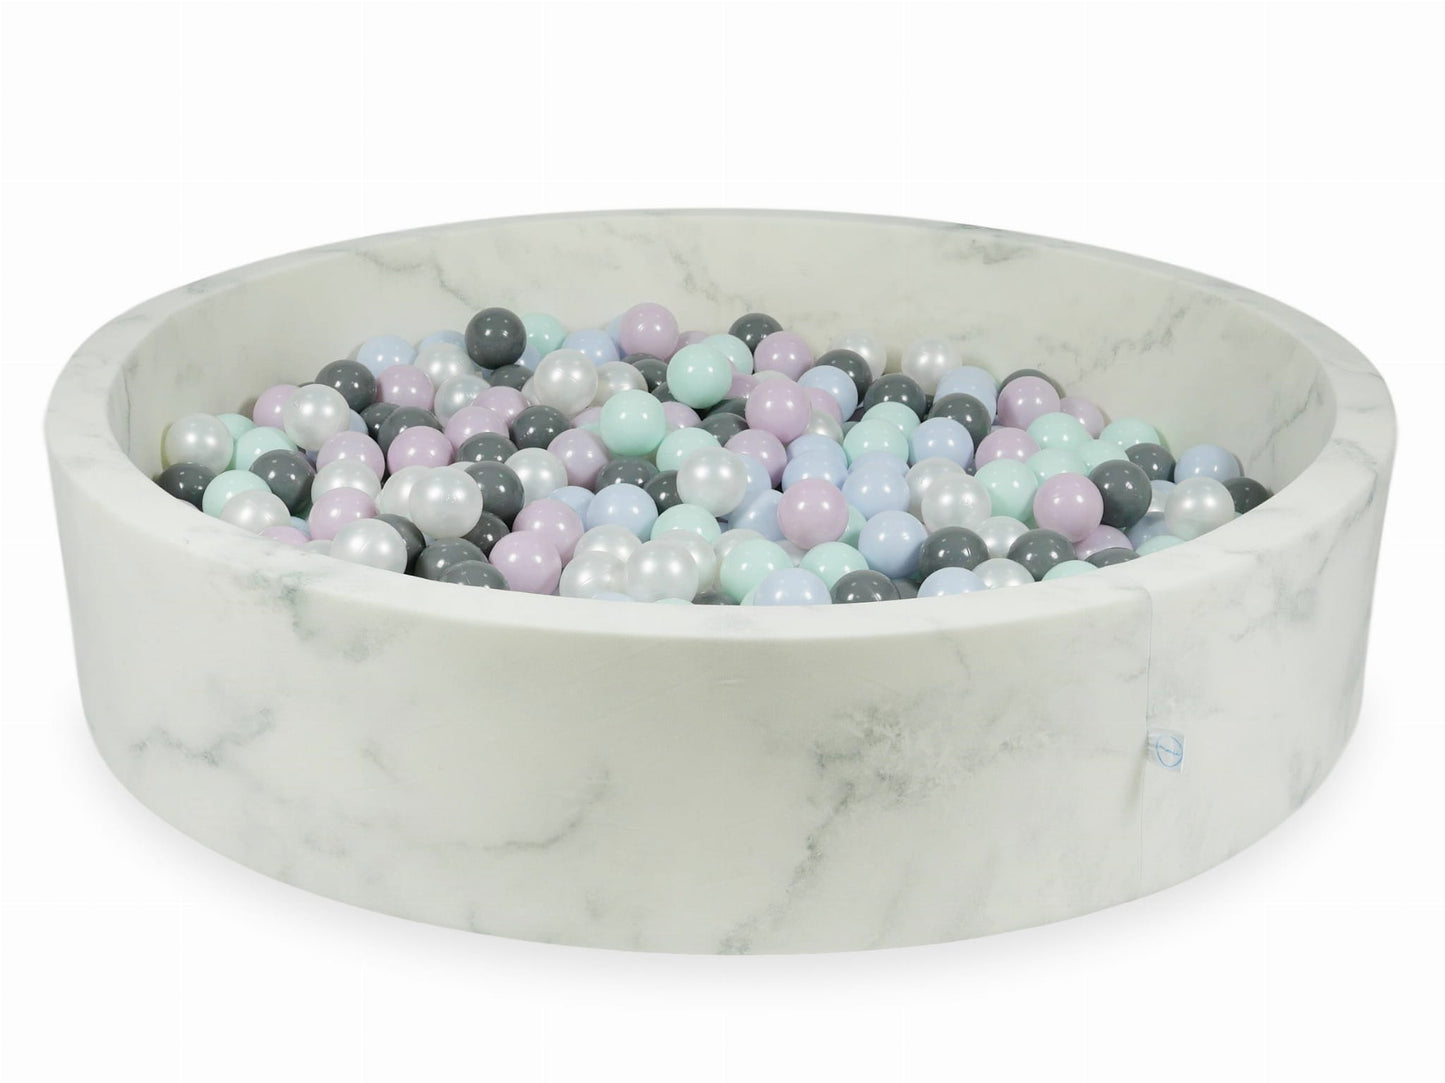 Piscine à Balles 130x30 marbre avec balles 600 pcs (menthe claire, rose perle claire, bleu perle claire, perle, gris)